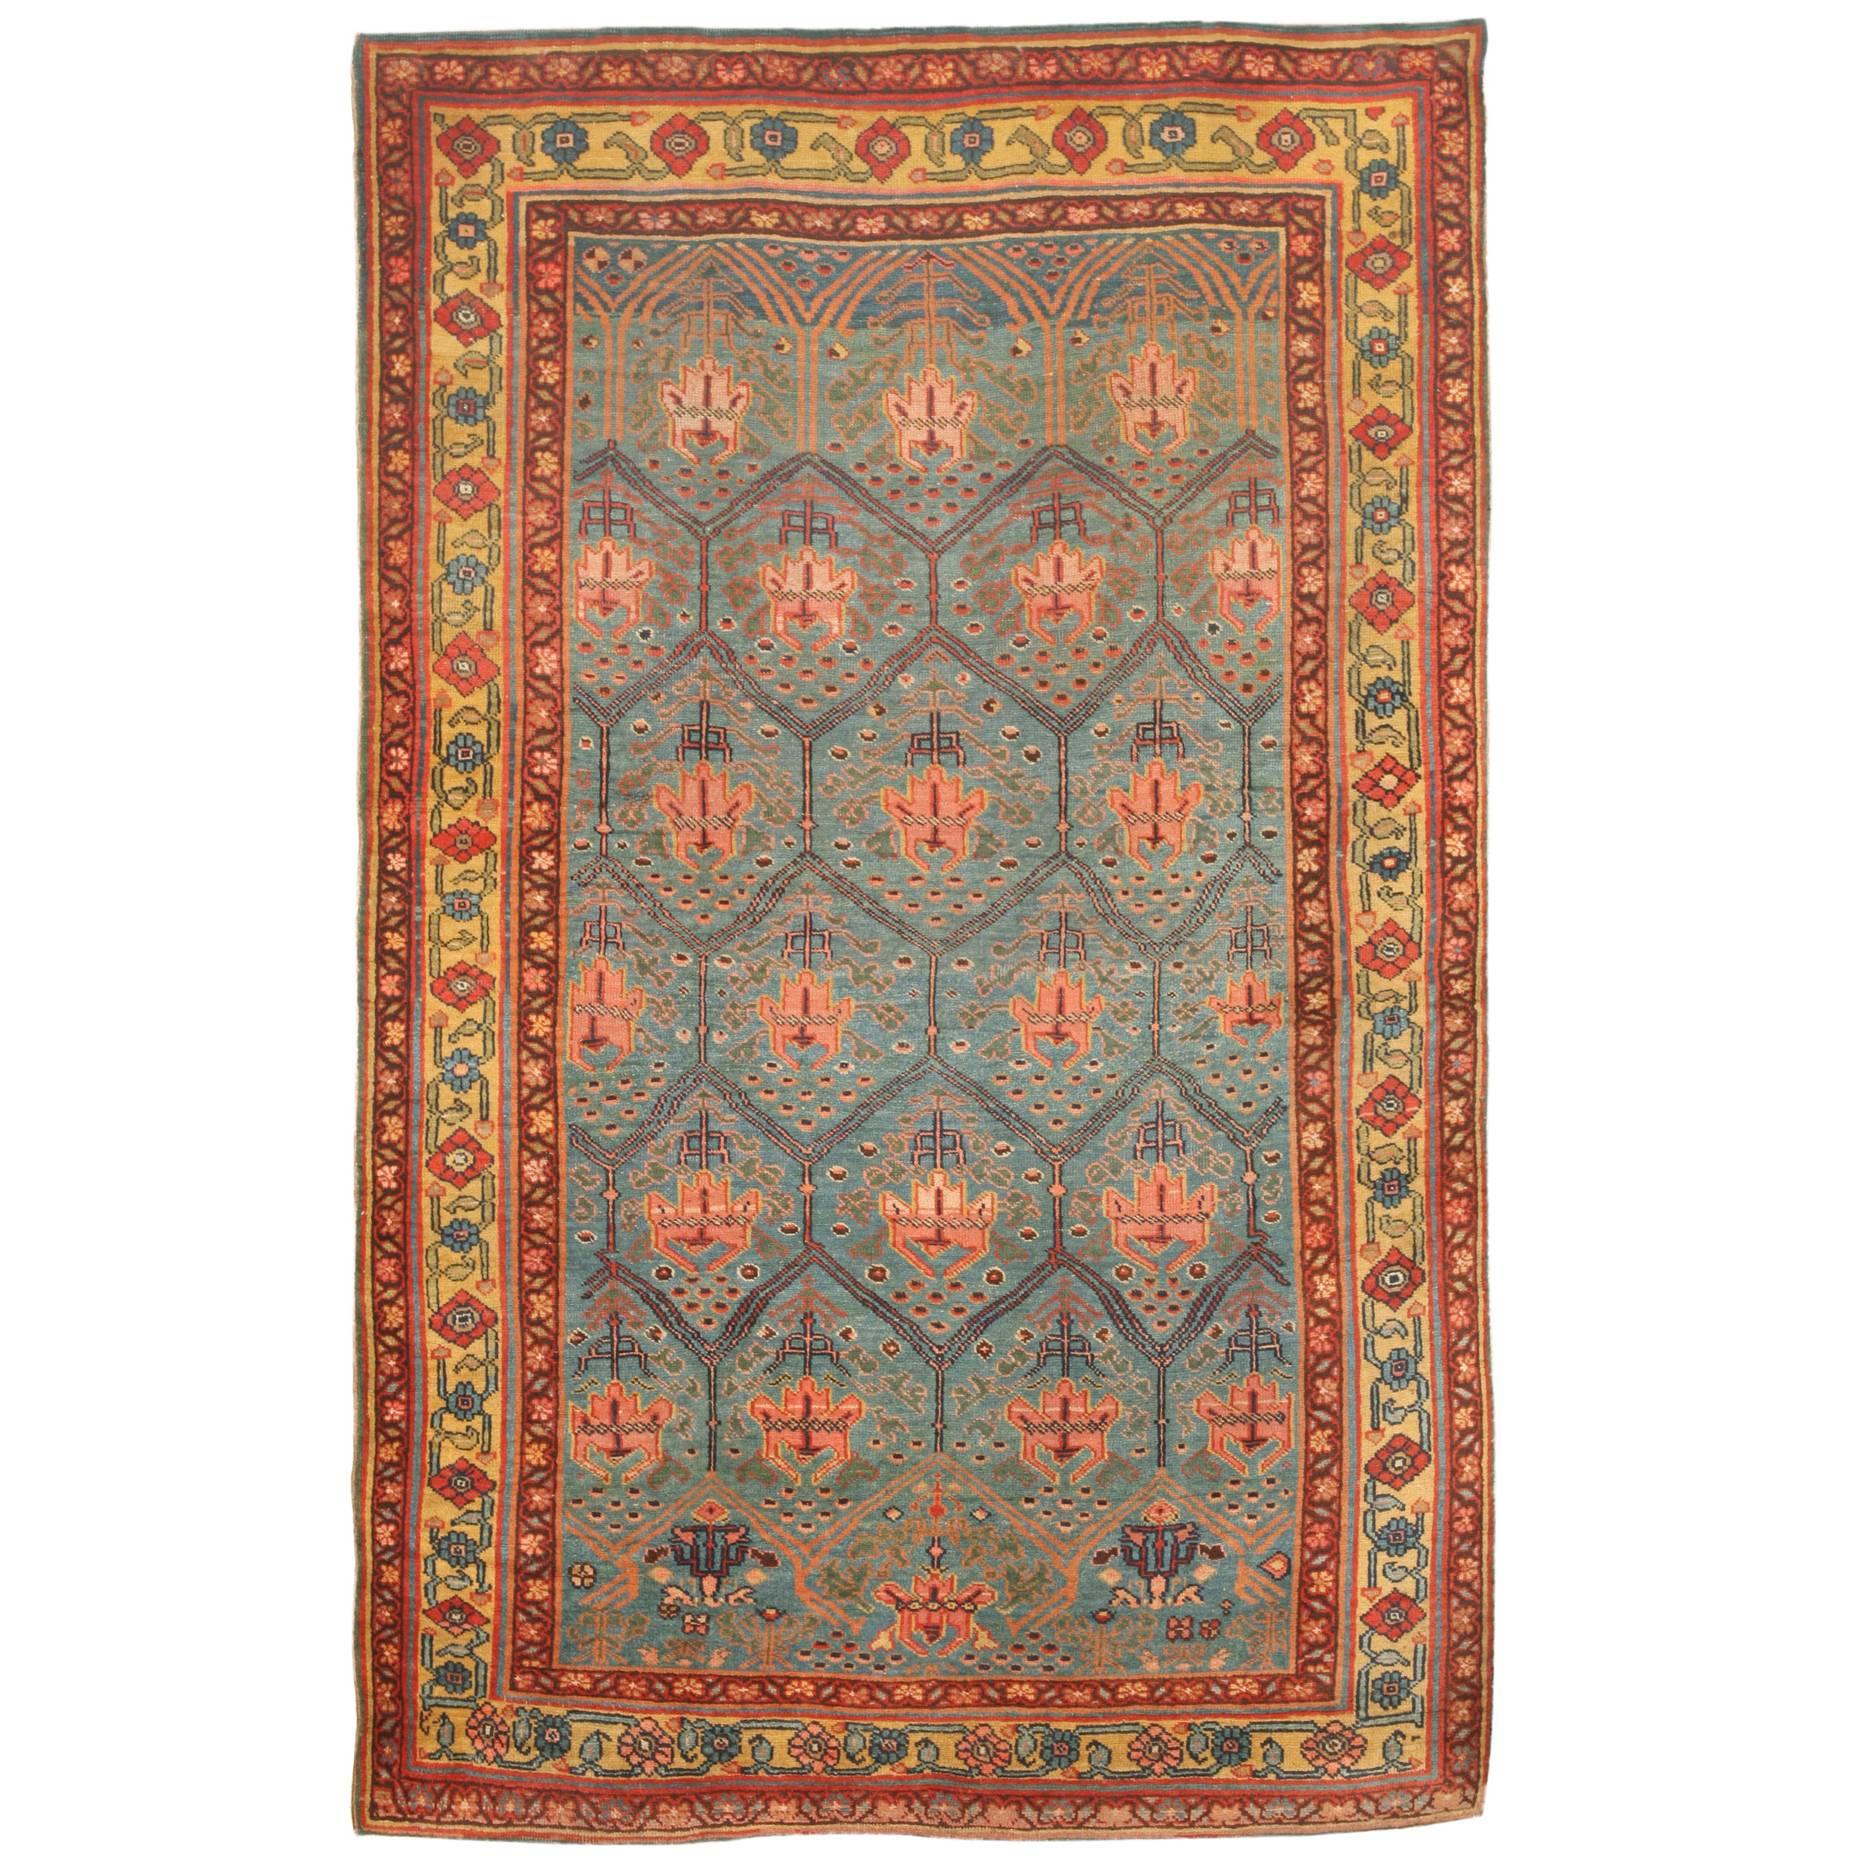 Exceptional Rare Antique 19th Century Persian Bidjar Rug For Sale